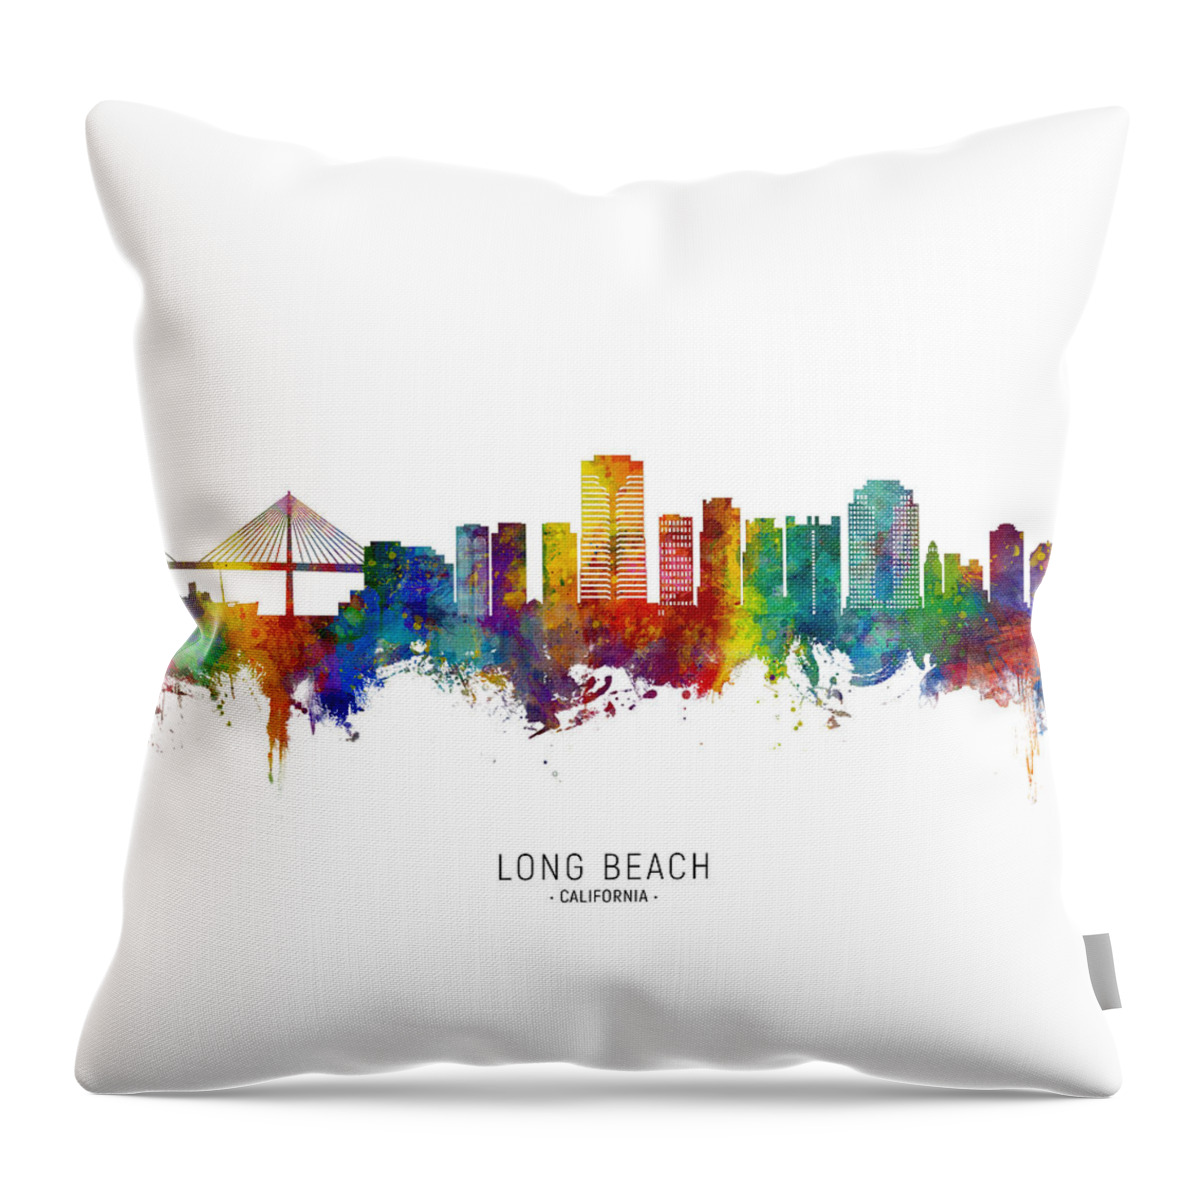 Long Beach Throw Pillow featuring the digital art Long Beach California Skyline by Michael Tompsett